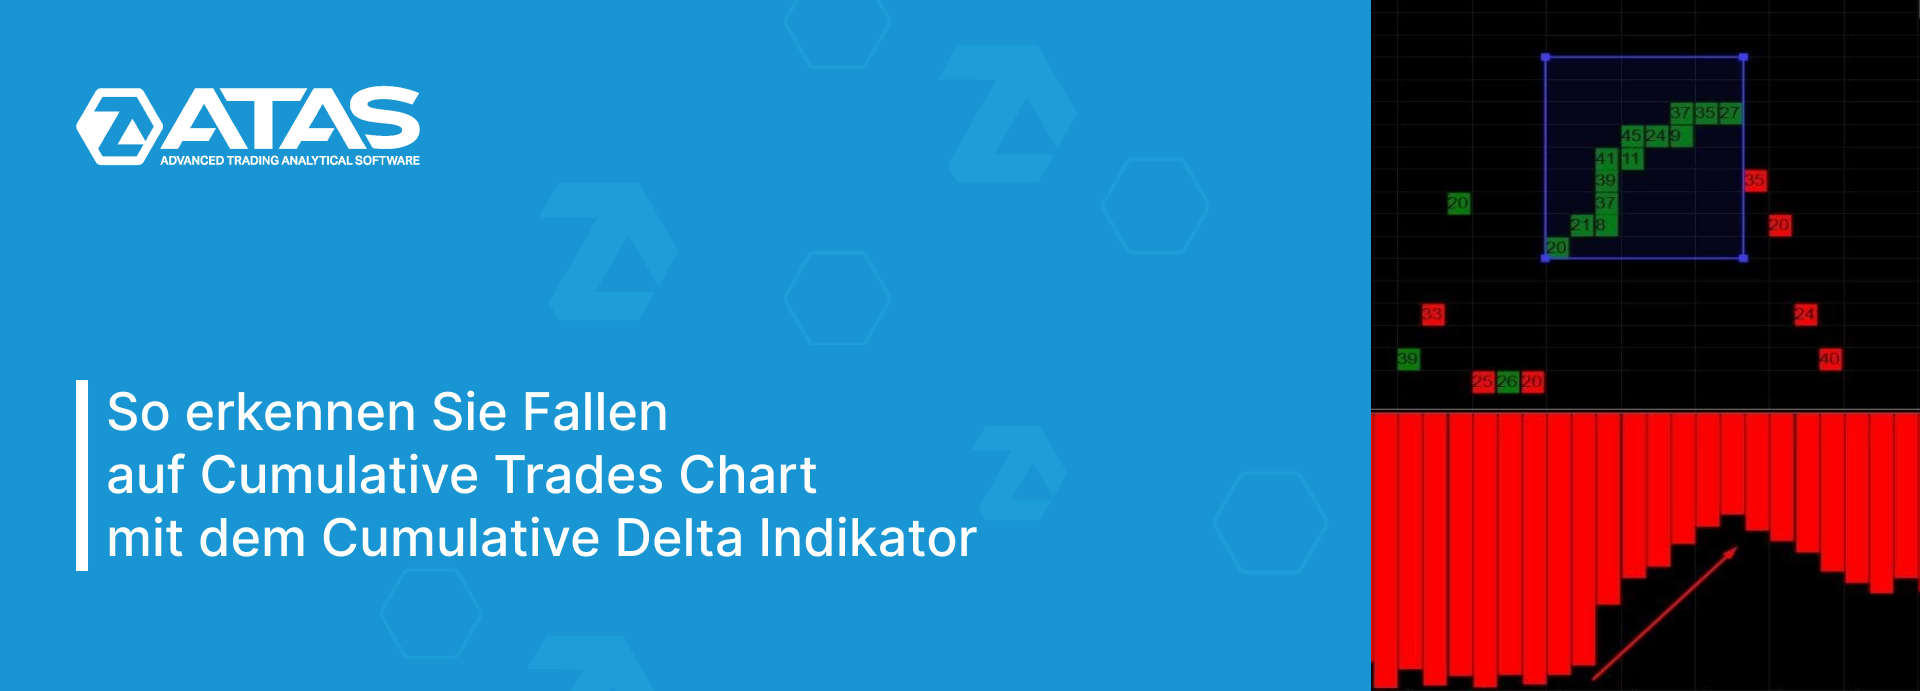 So erkennen Sie Fallen auf Cumulative Trades Chart mit dem Cumulative Delta Indikator